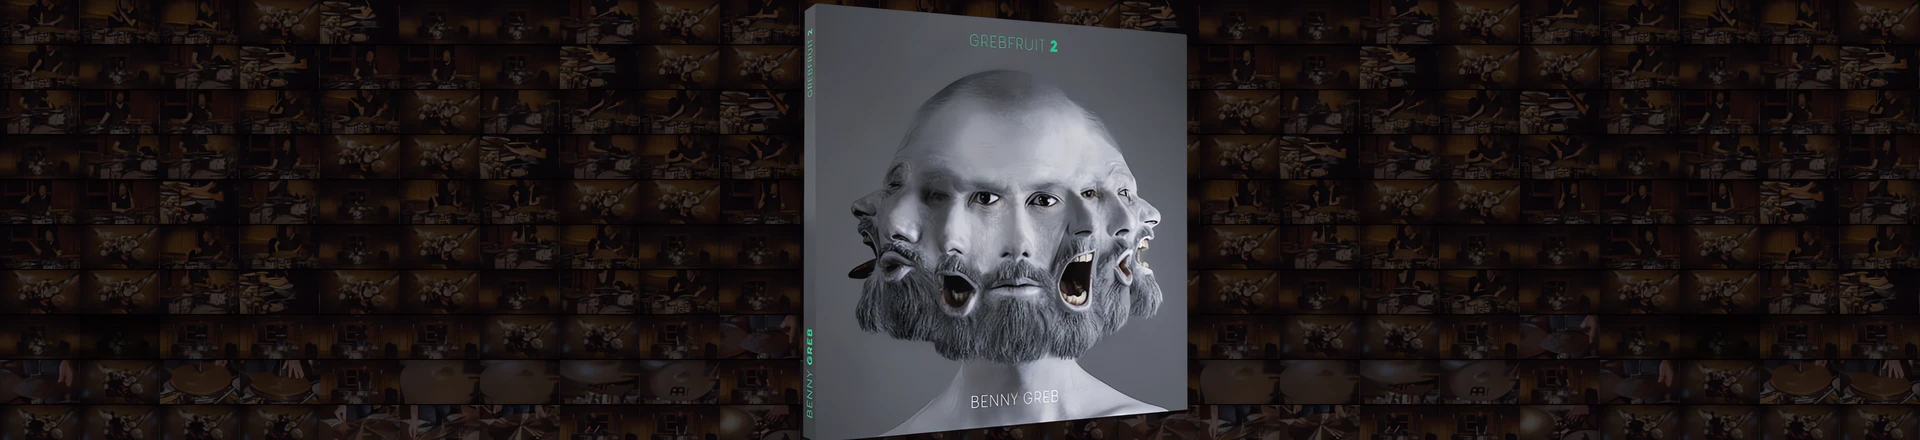 Grebfruit 2, czyli nowa płyta Benny'ego Greba już w sprzedaży 